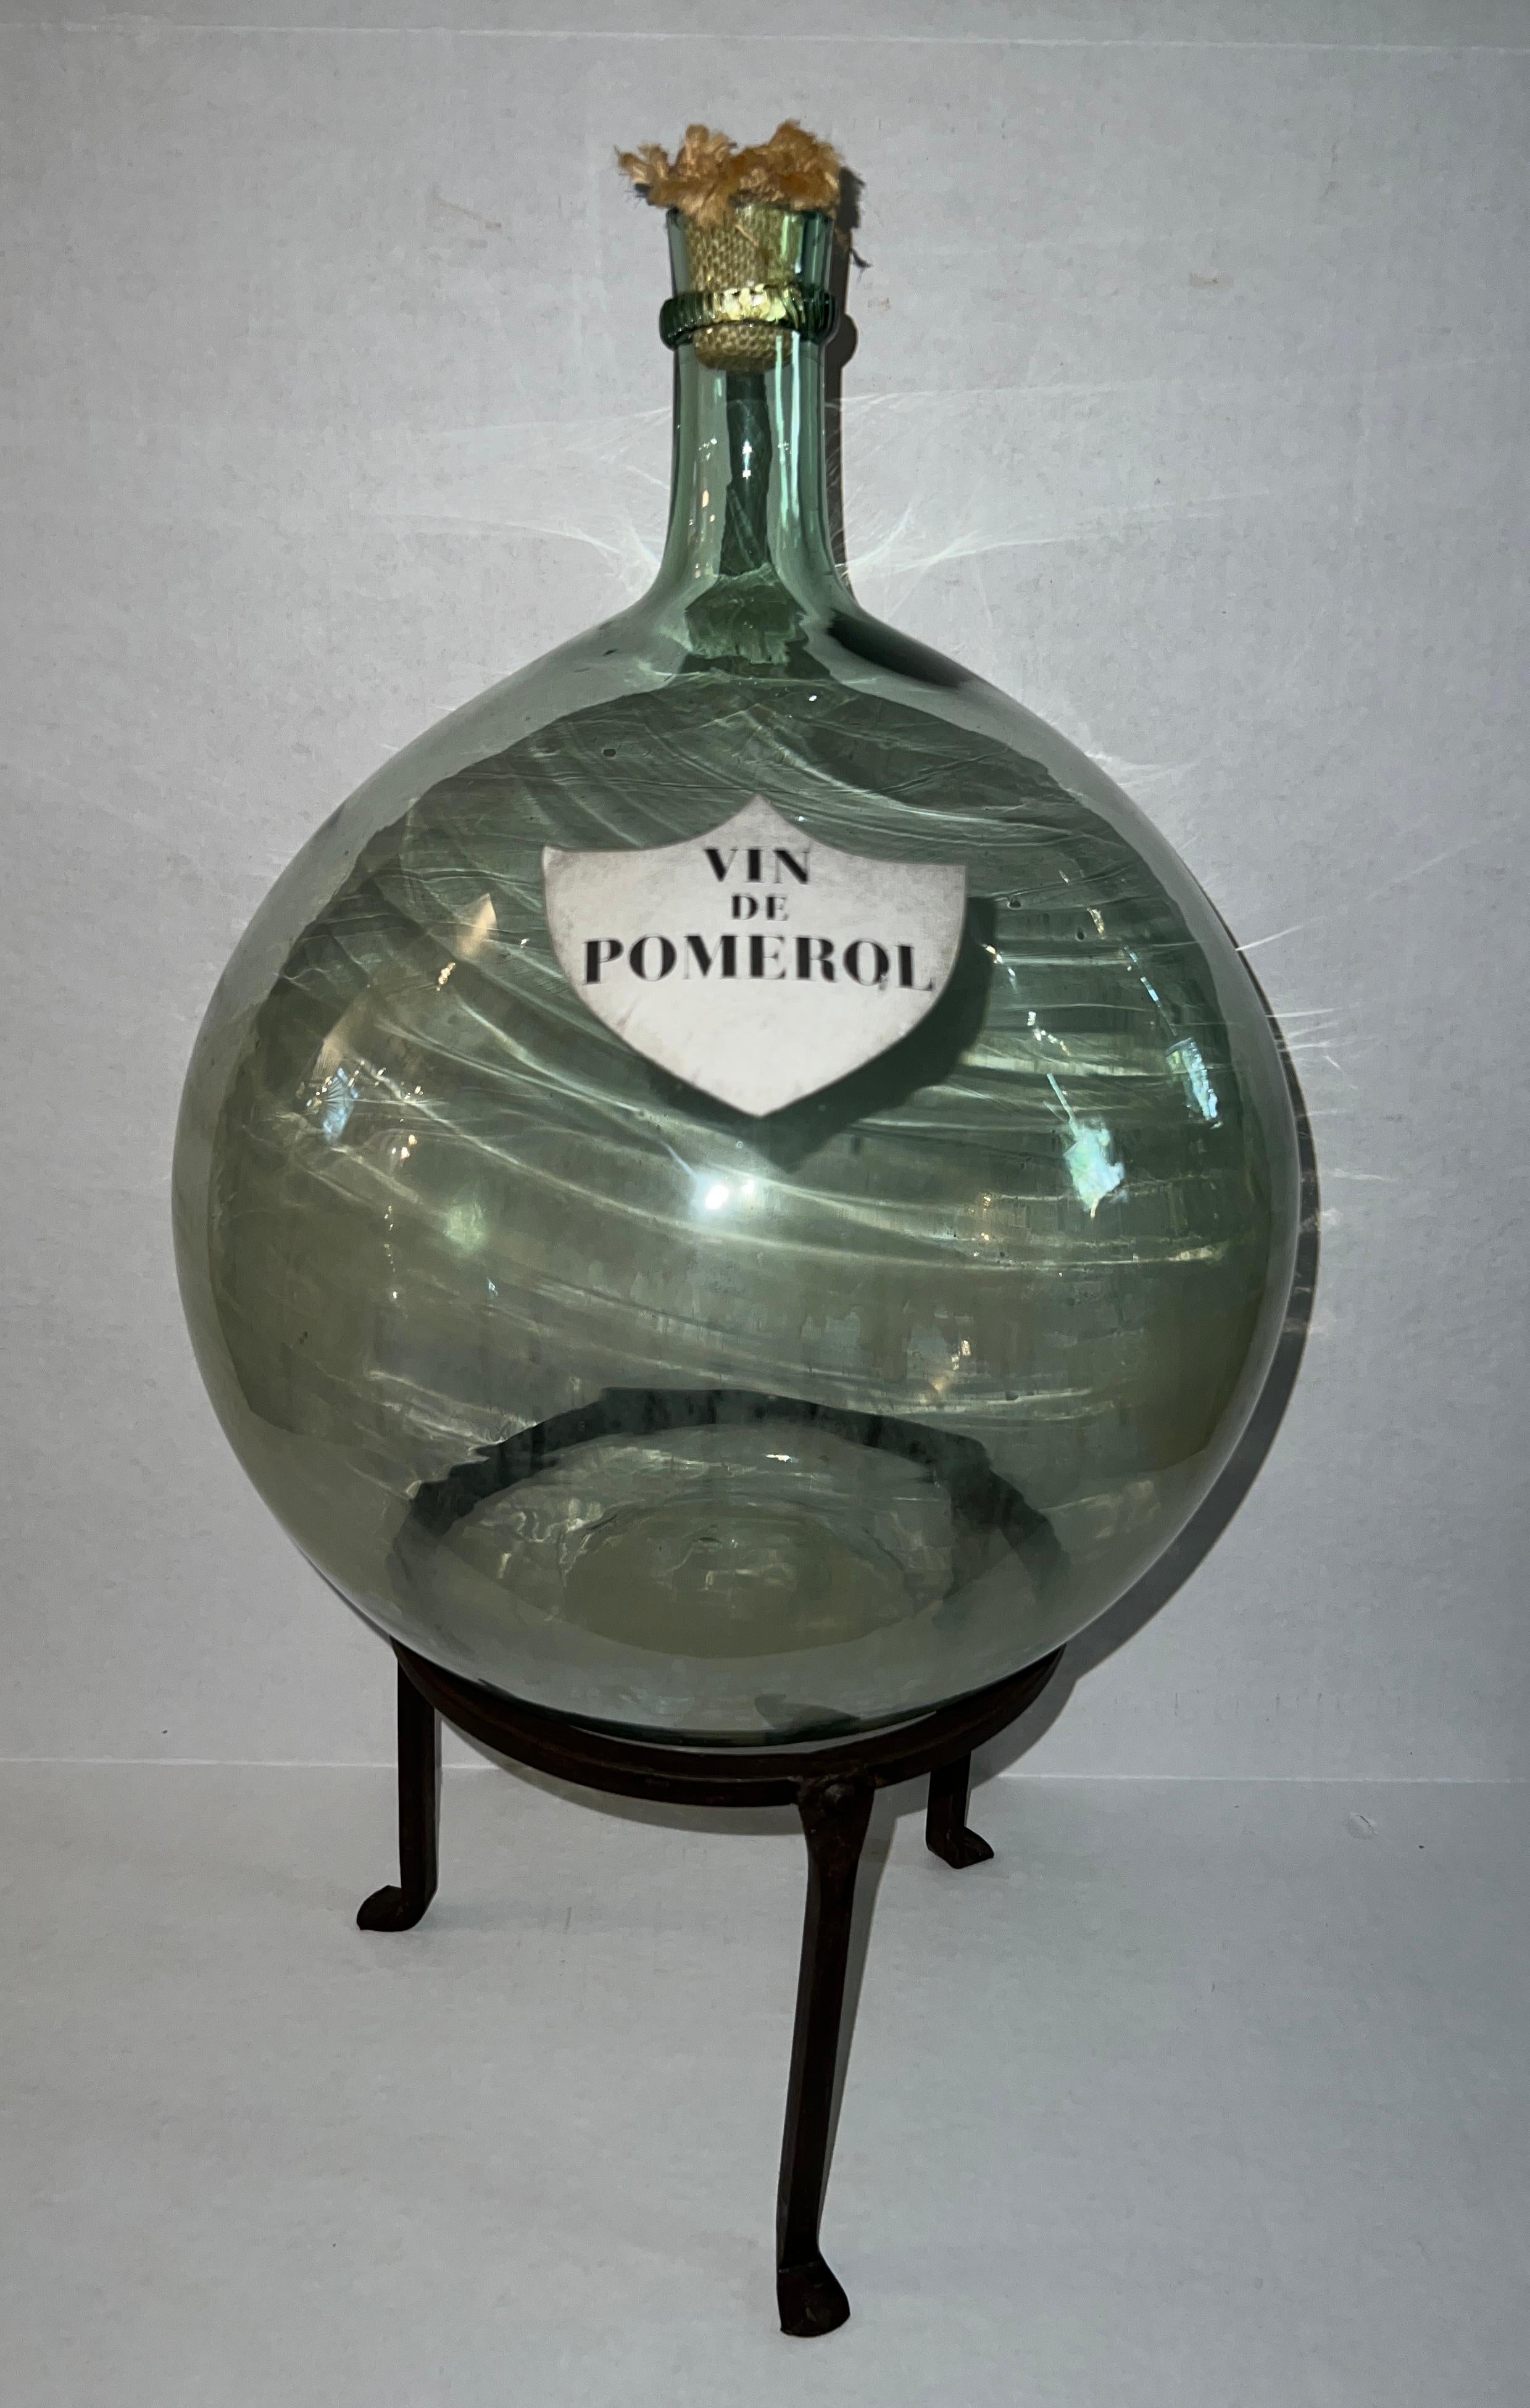 Le Demijohn en verre soufflé French Vin De Pomerol, d'une taille de 15 pouces, est un chef-d'œuvre artisanal époustouflant pour les amateurs de vin.

Le support en fer forgé est inclus 